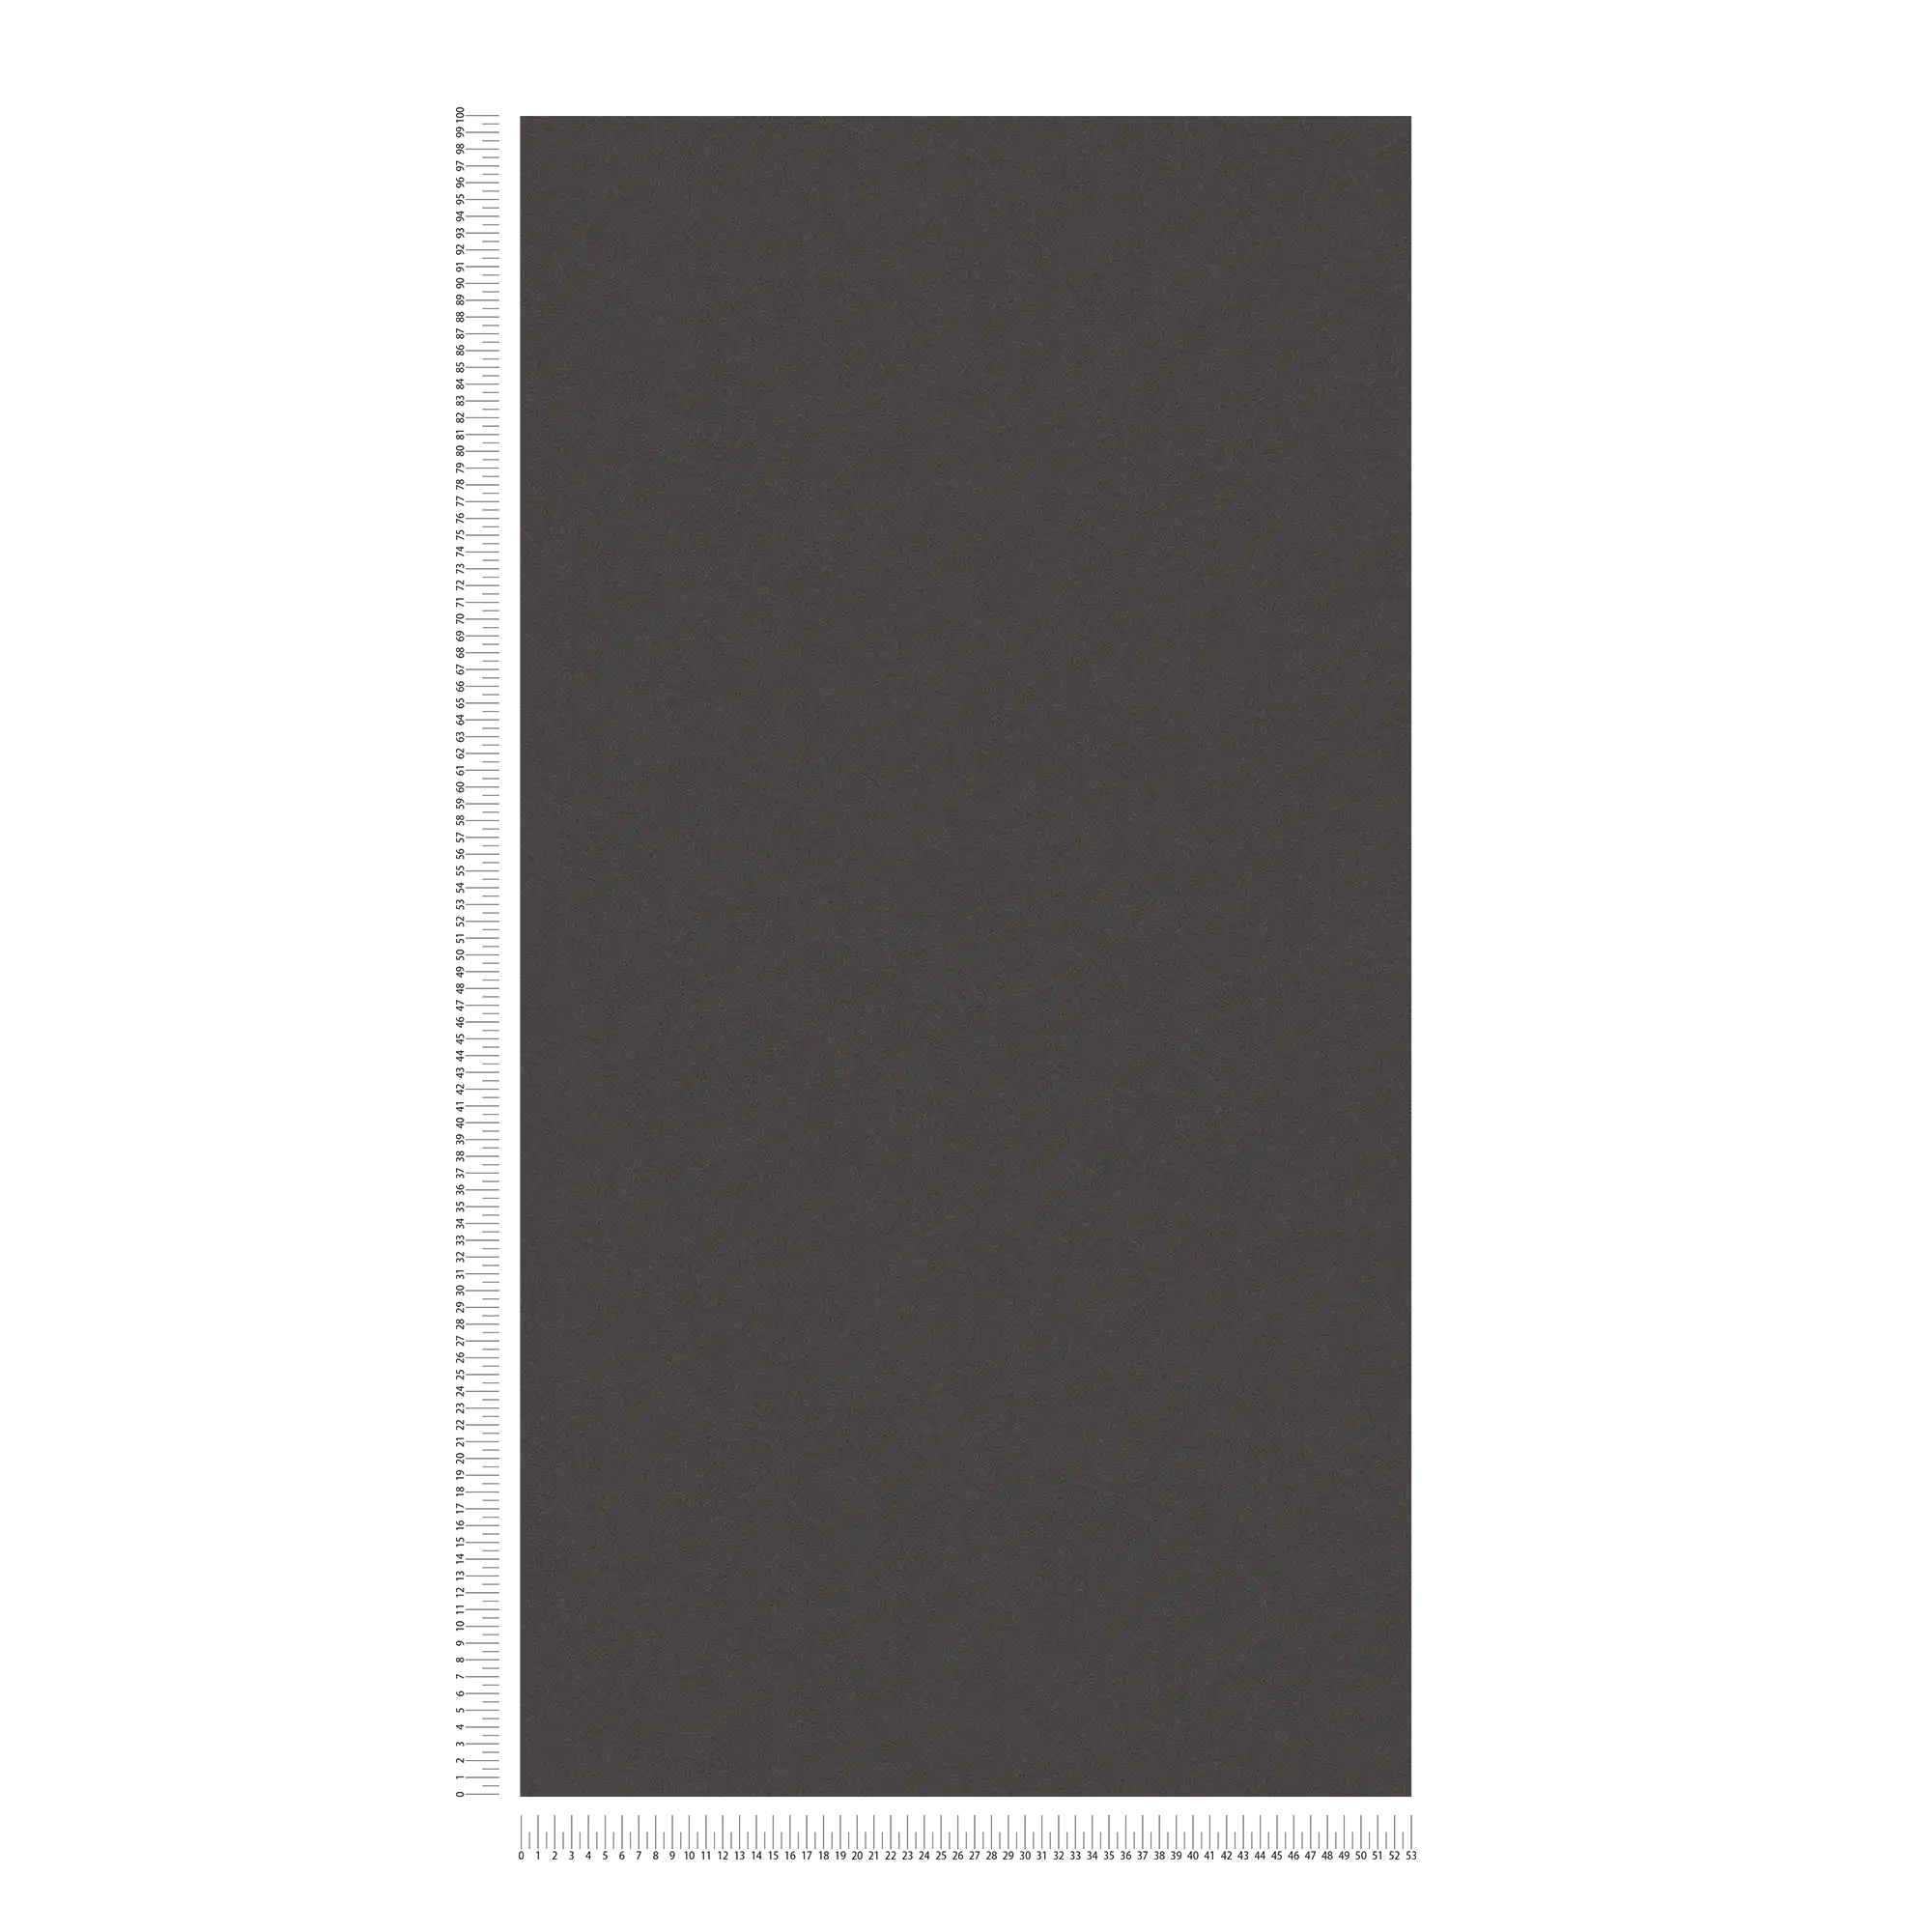             Uni Tapete mit dezenter Oberflächenstruktur – Schwarz
        